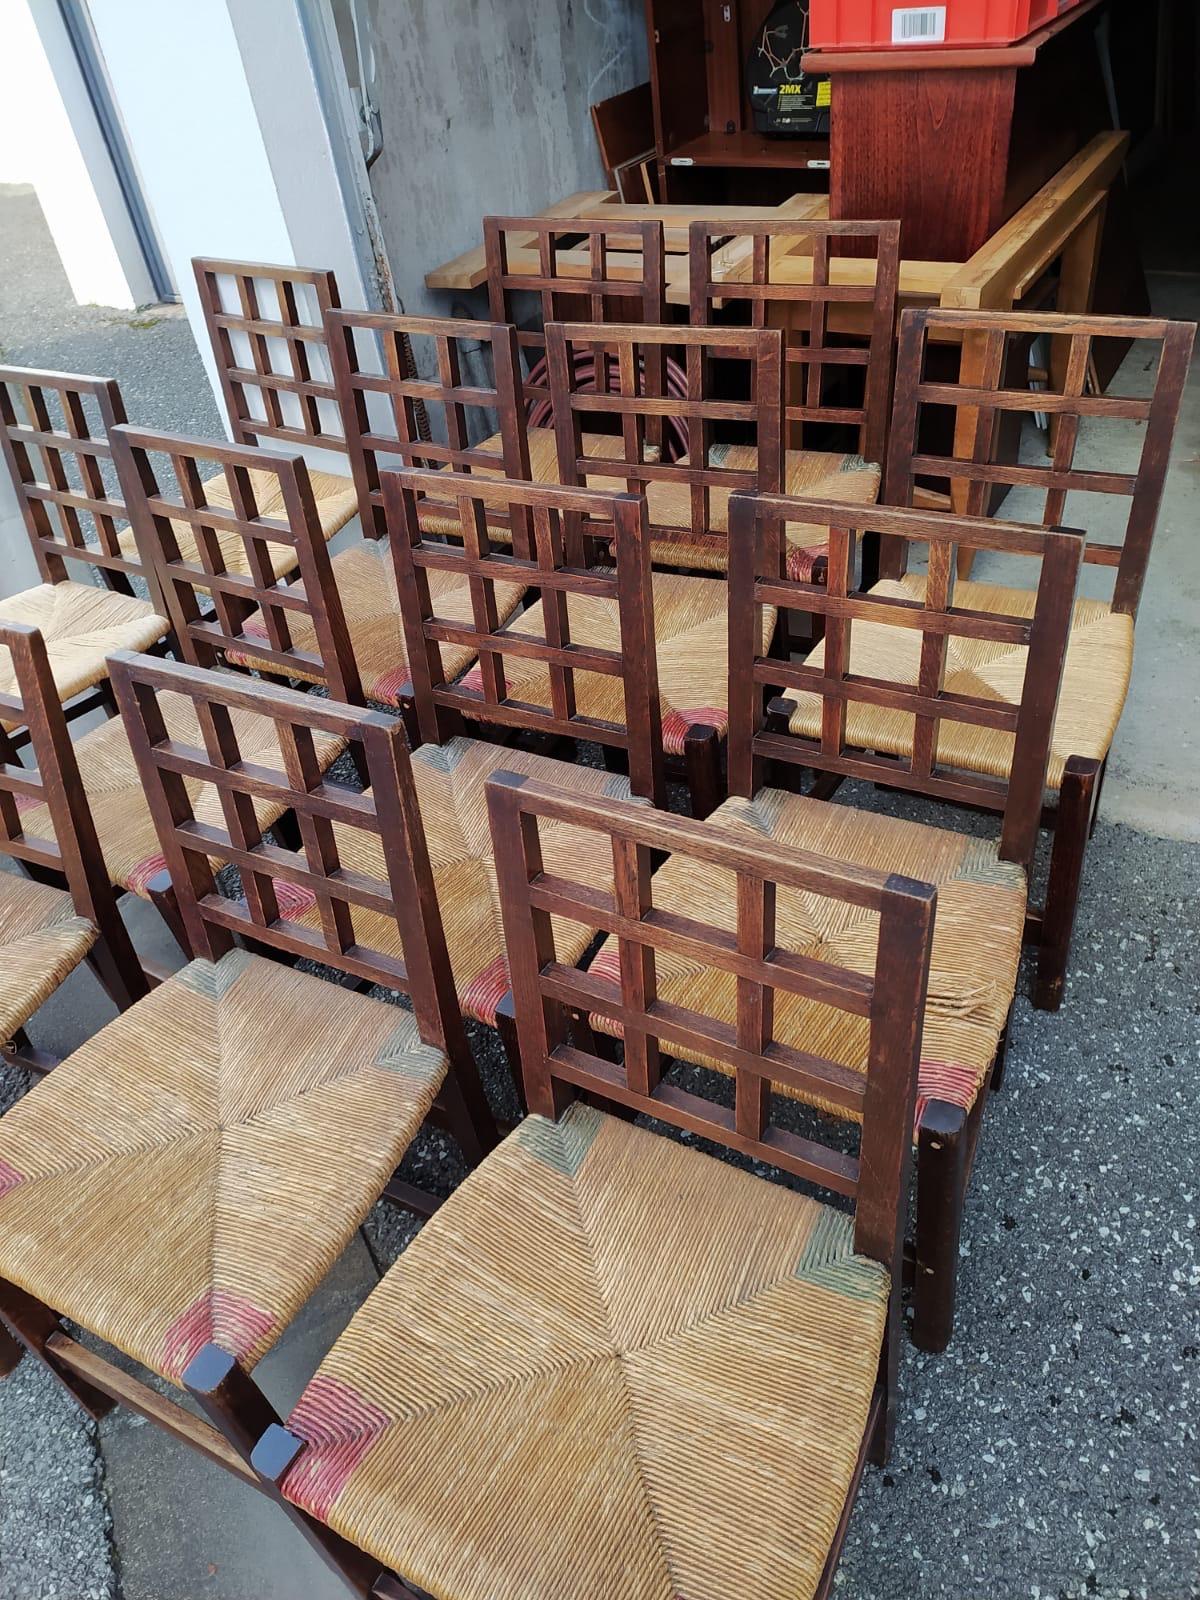 Ensemble de douze chaises dessinées par Victor Courtray (1896-1987)
Ecole de Maurice Dufrene, Paul Follot,
chaises avec la paille d'origine pour 10 et 2 refaites.